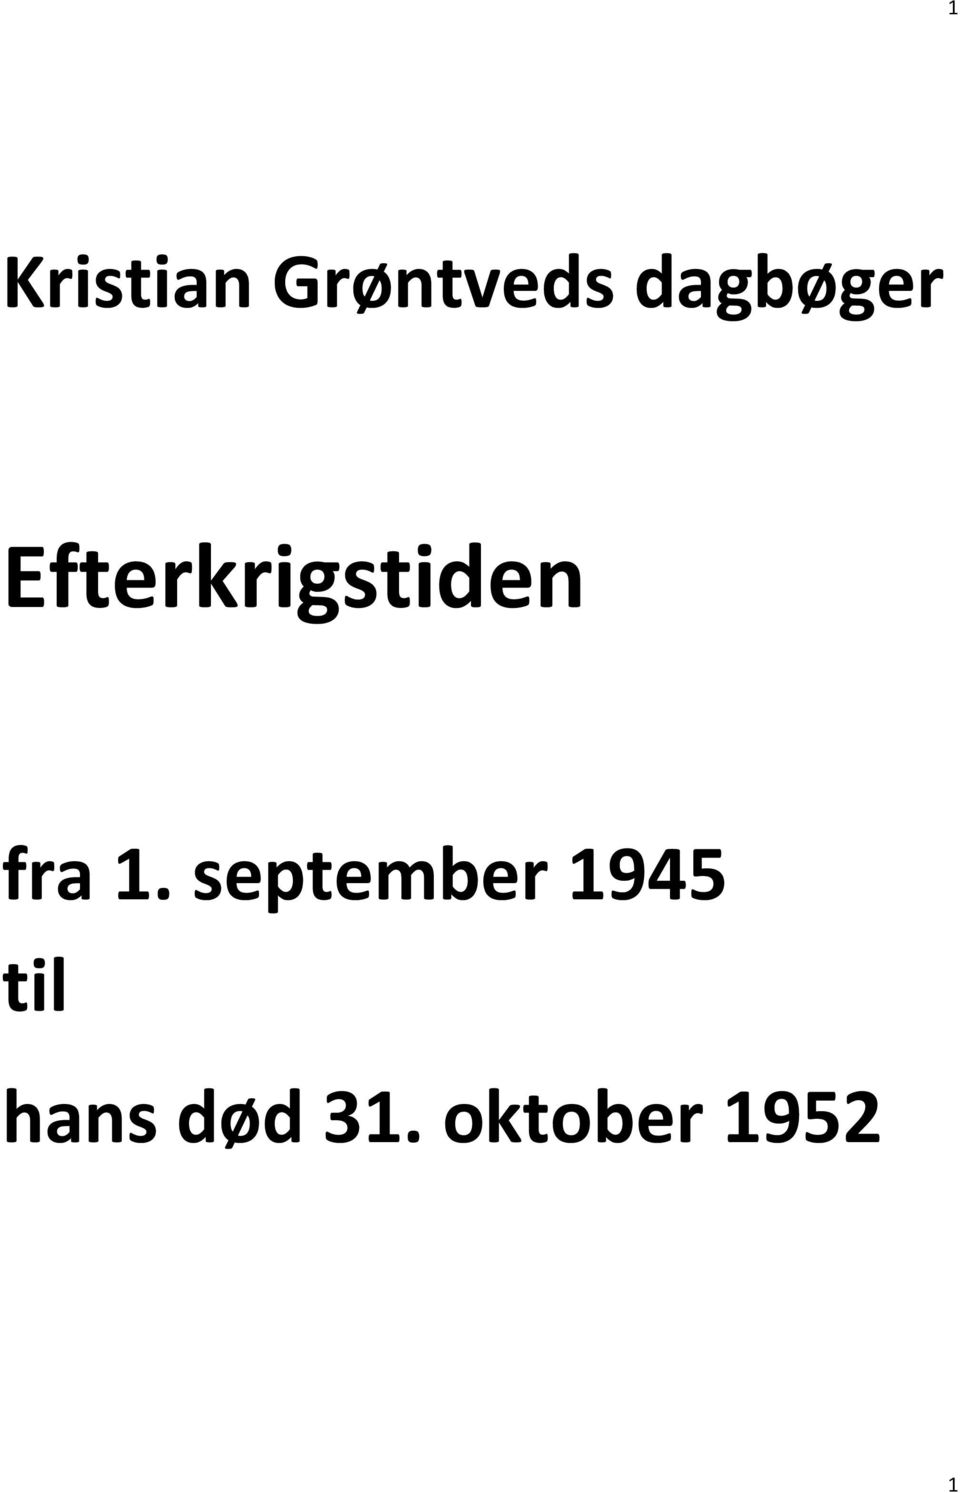 Kristian Grøntveds dagbøger. Efterkrigstiden. fra 1. september ...